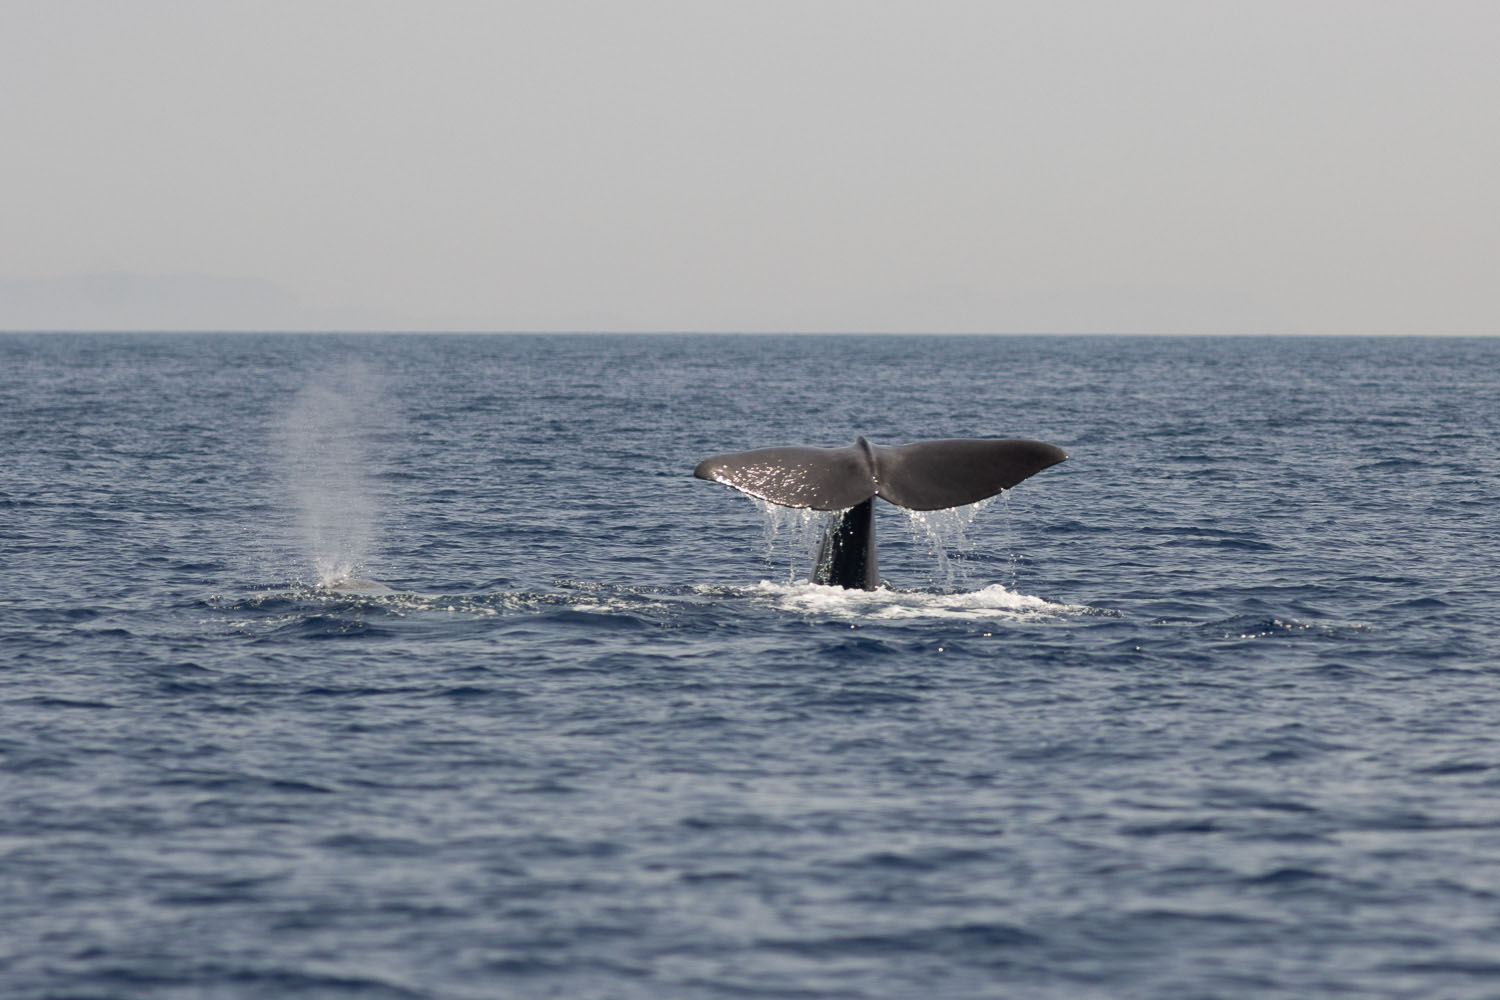 voyage scientifique - cetaces de mediterranee vers la corse a la voile 2